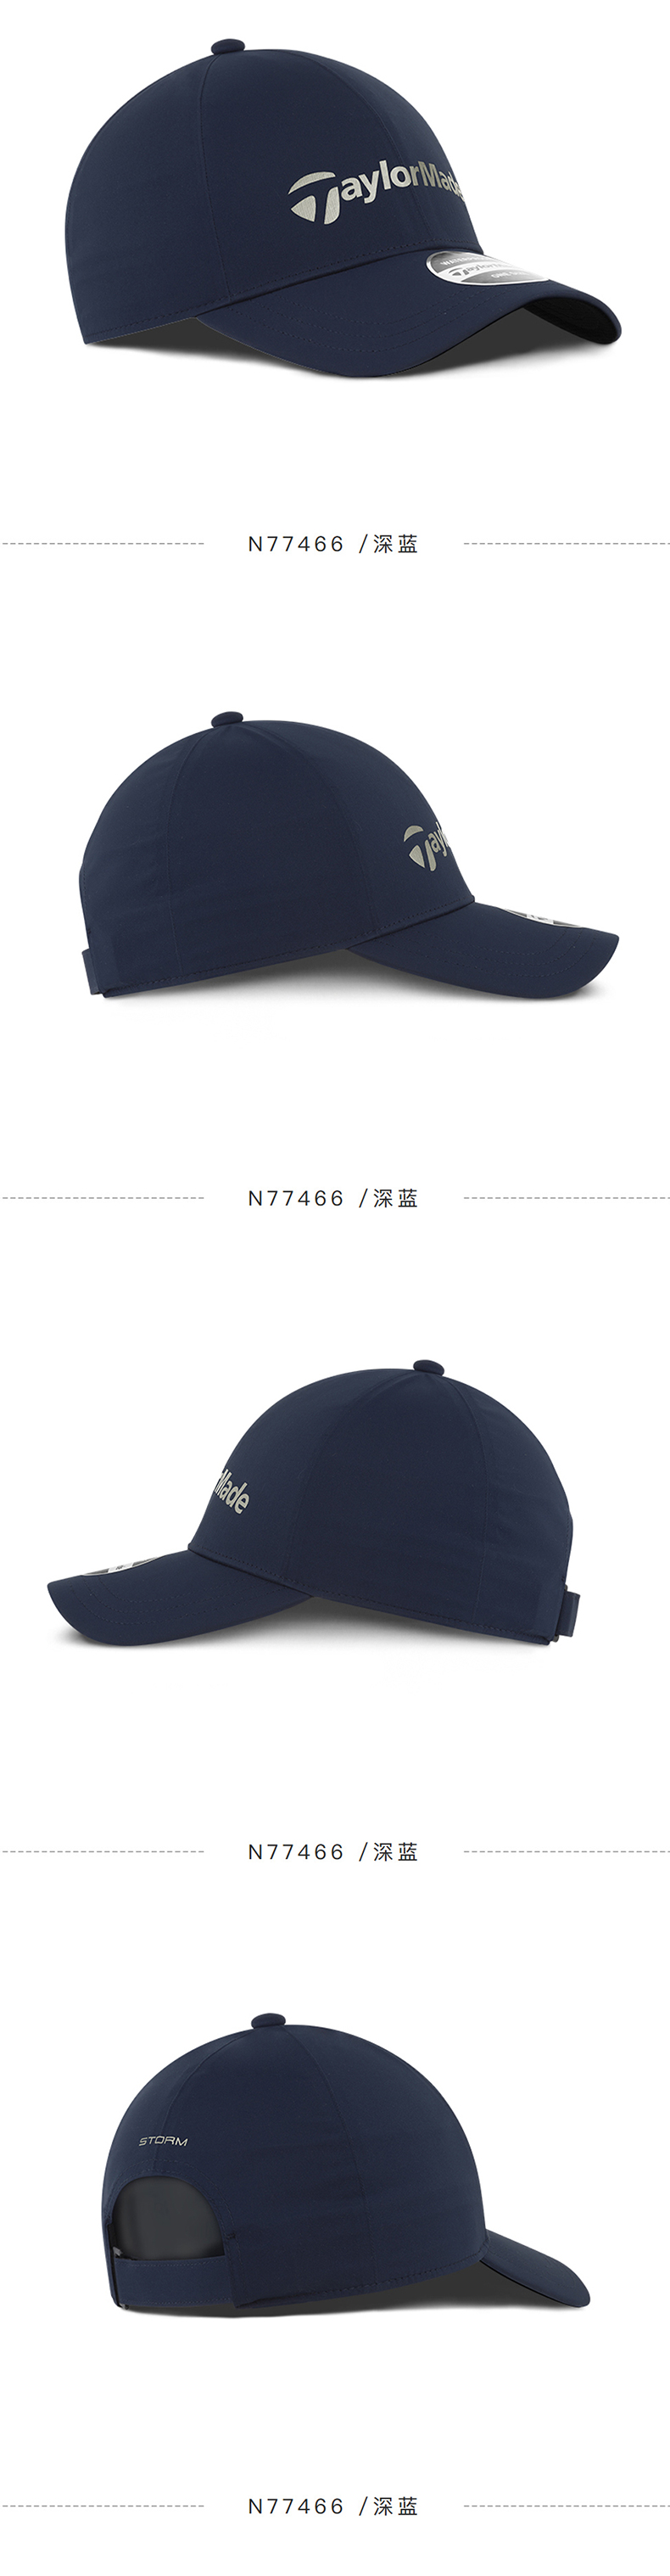 【新品】TaylorMade泰勒梅高尔夫帽男士圆顶帽golf遮阳帽N77464